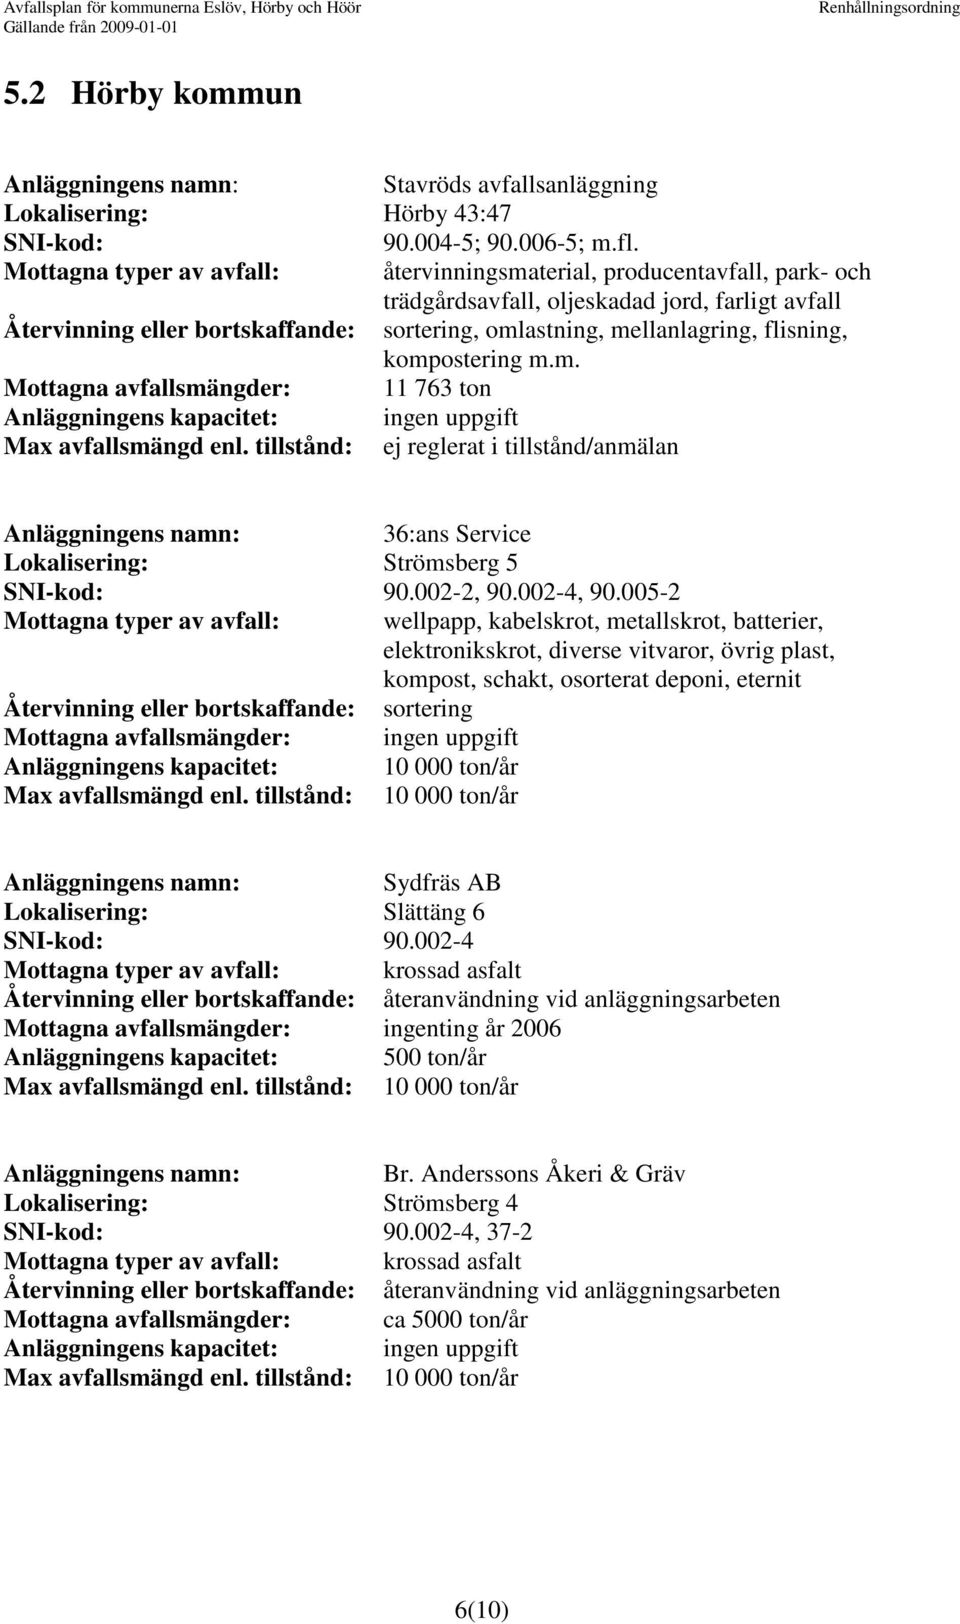 flisning, kompostering m.m. Mottagna avfallsmängder: 11 763 ton /anmälan 36:ans Service Lokalisering: Strömsberg 5 SNI-kod: 90.002-2, 90.002-4, 90.